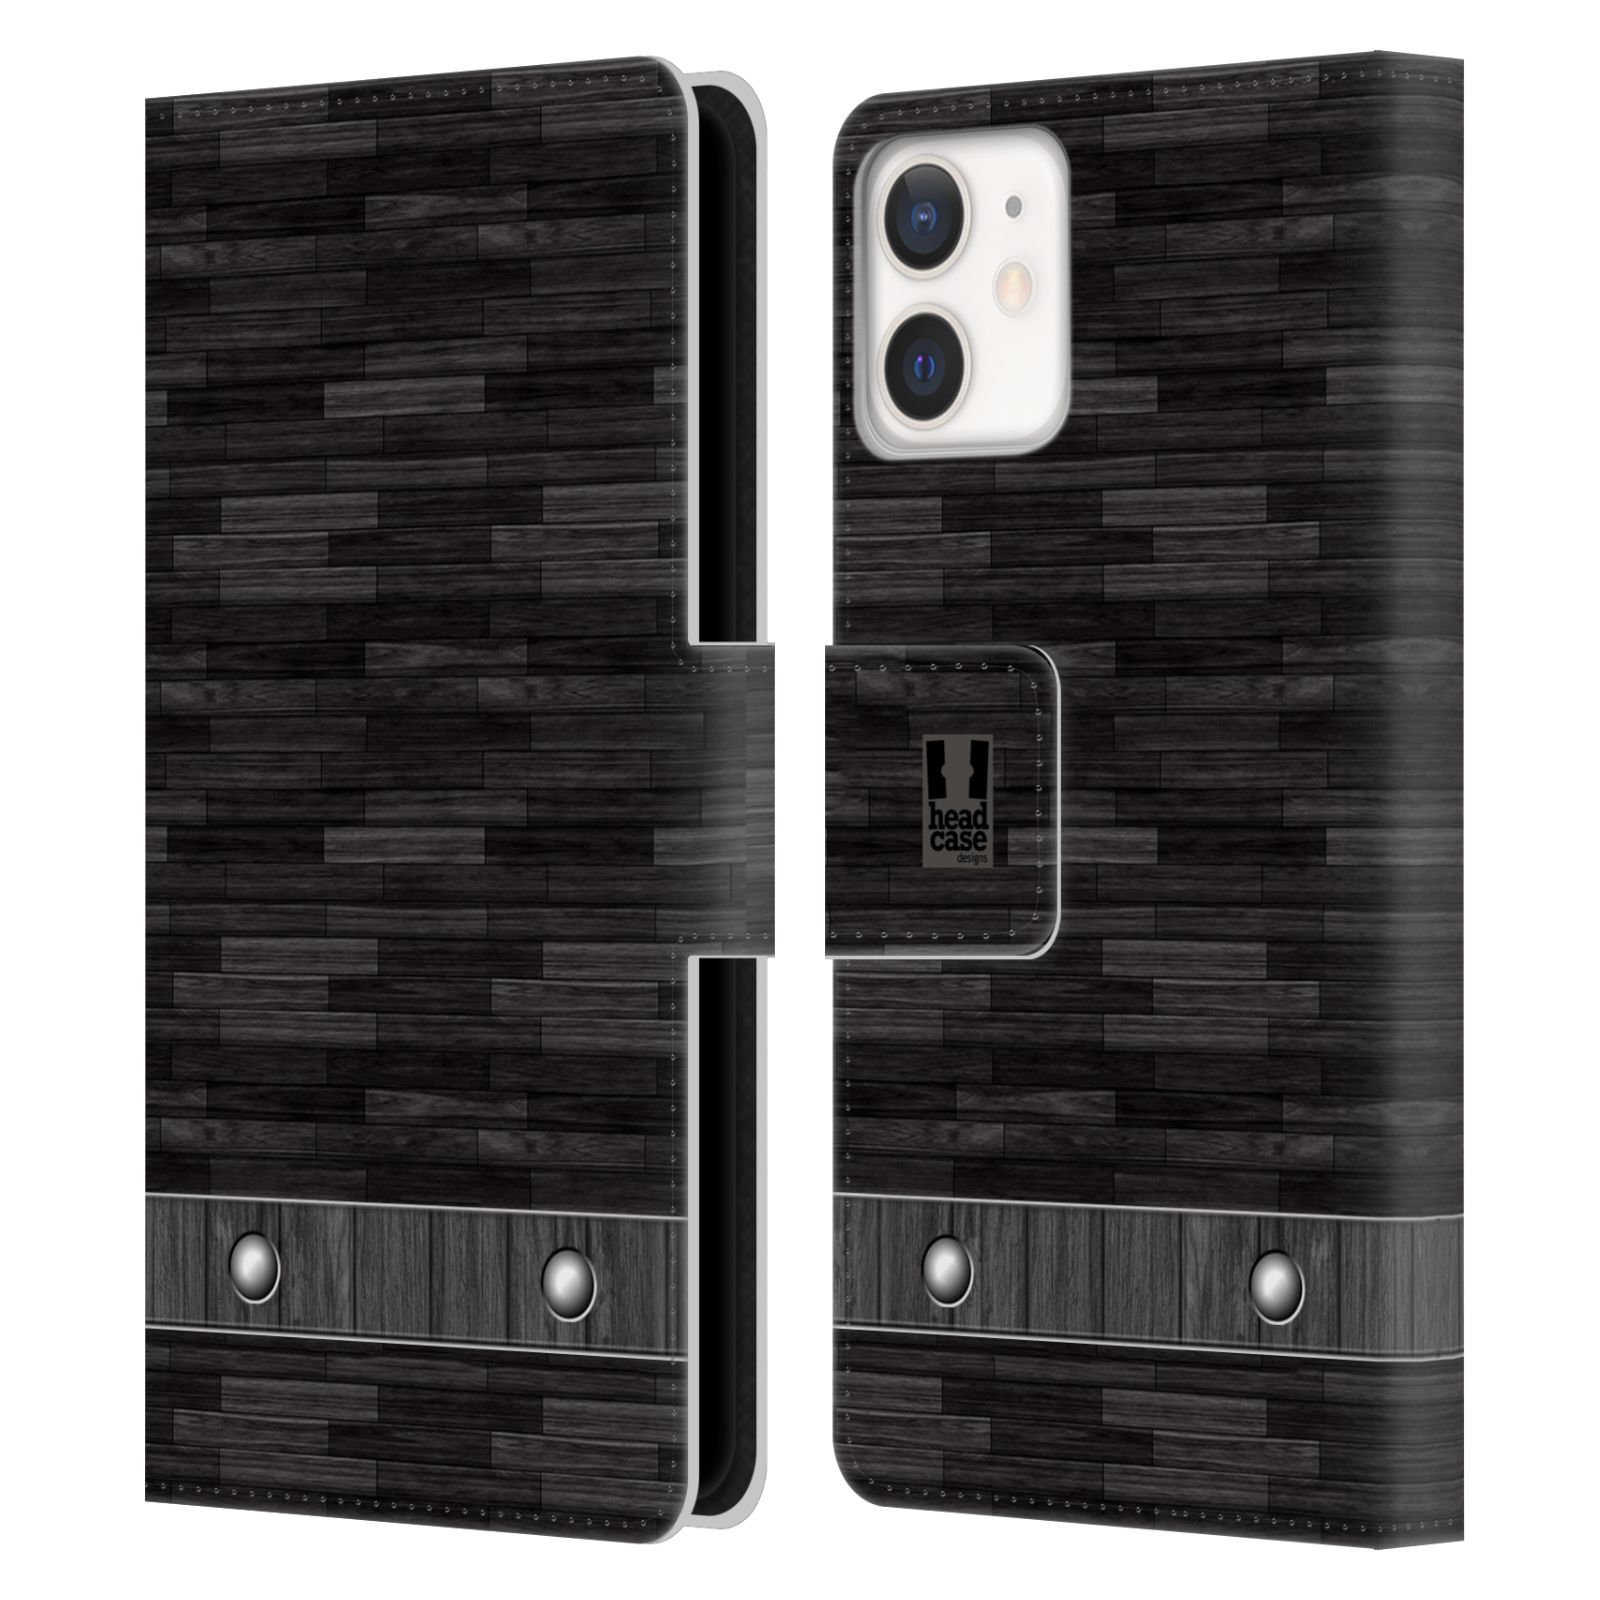 Pouzdro pro mobil Apple Iphone 12 MINI stavební textury dřevo černá barva